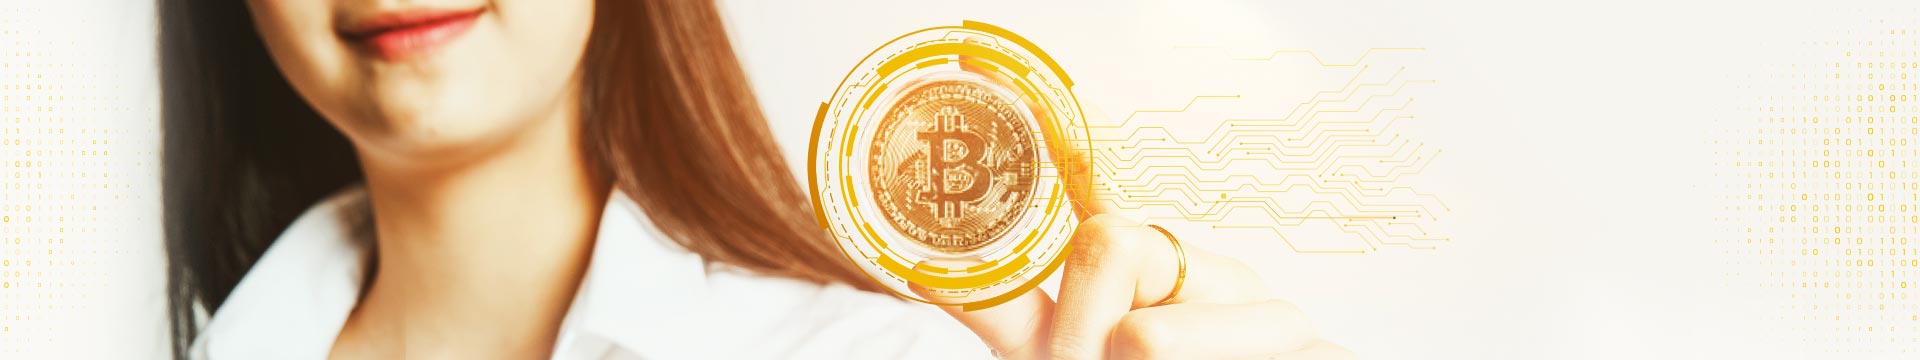 มือใหม่อยากลงทุนใน Bitcoin ต้องเตรียมตัวยังไง?